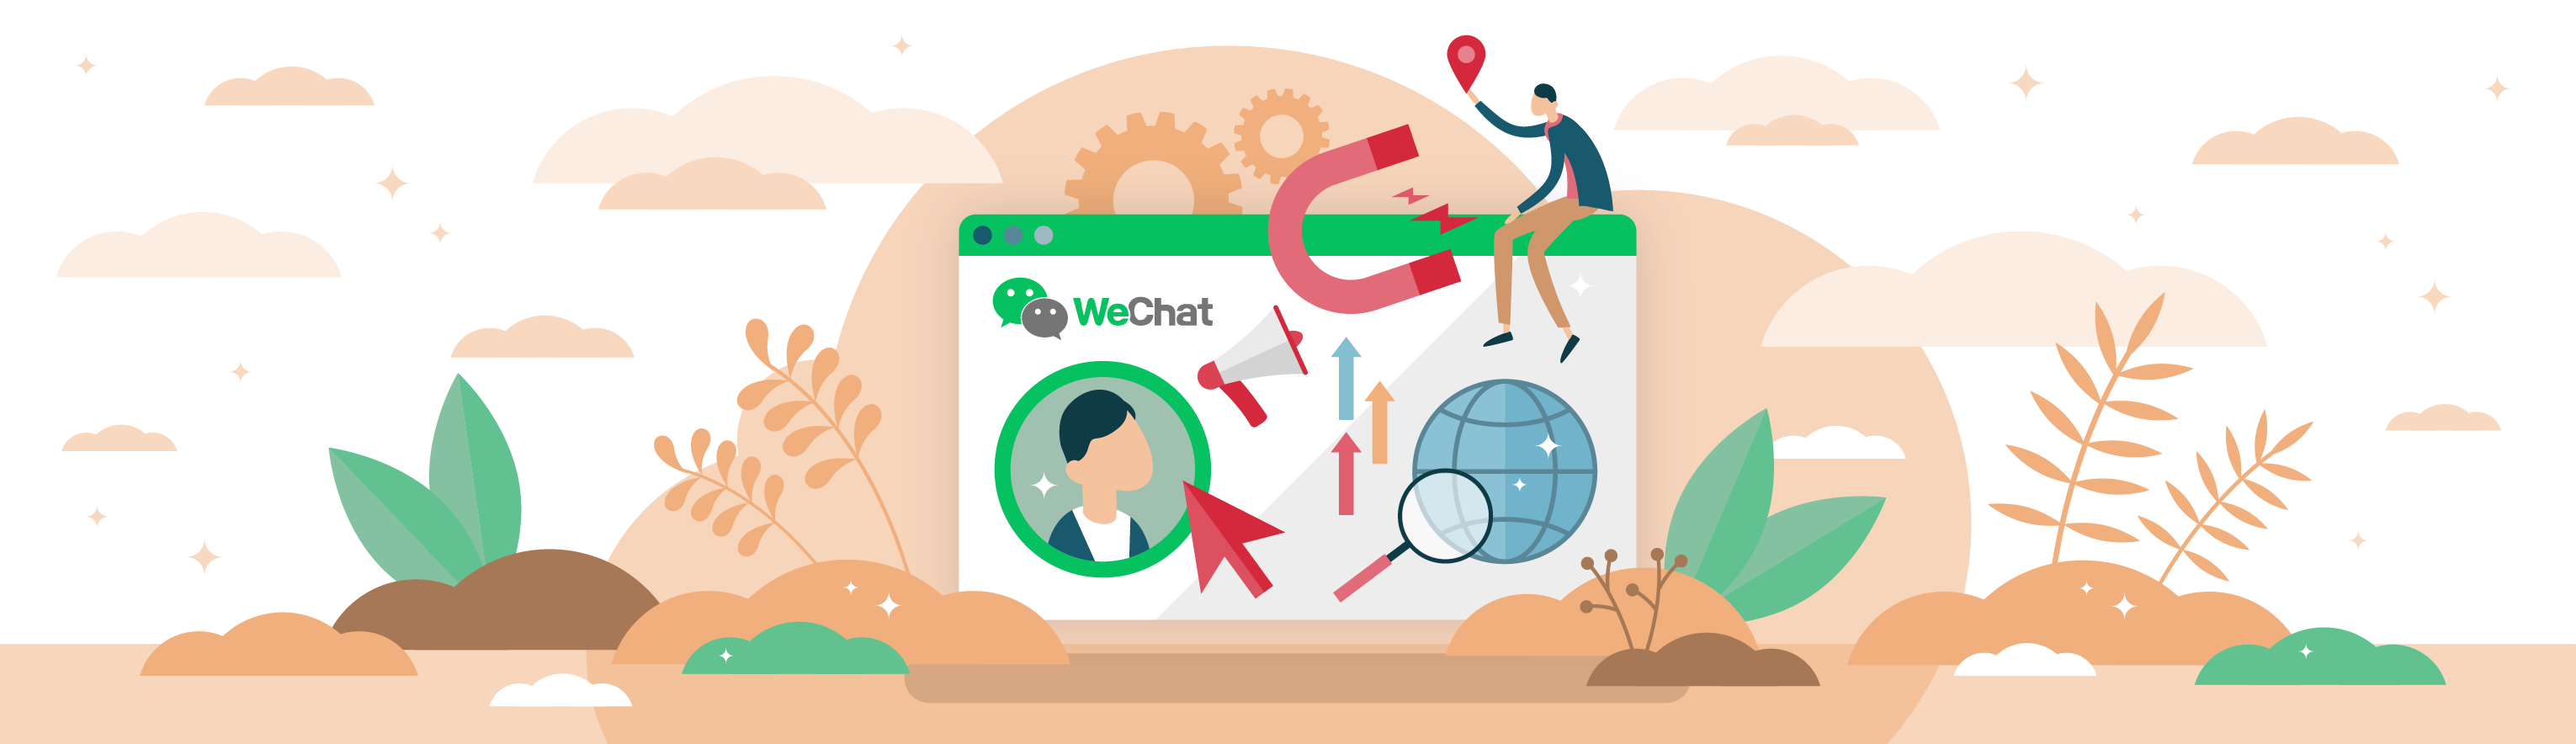 WeChat Official Account: La guida completa per aziende e professionisti del marketing